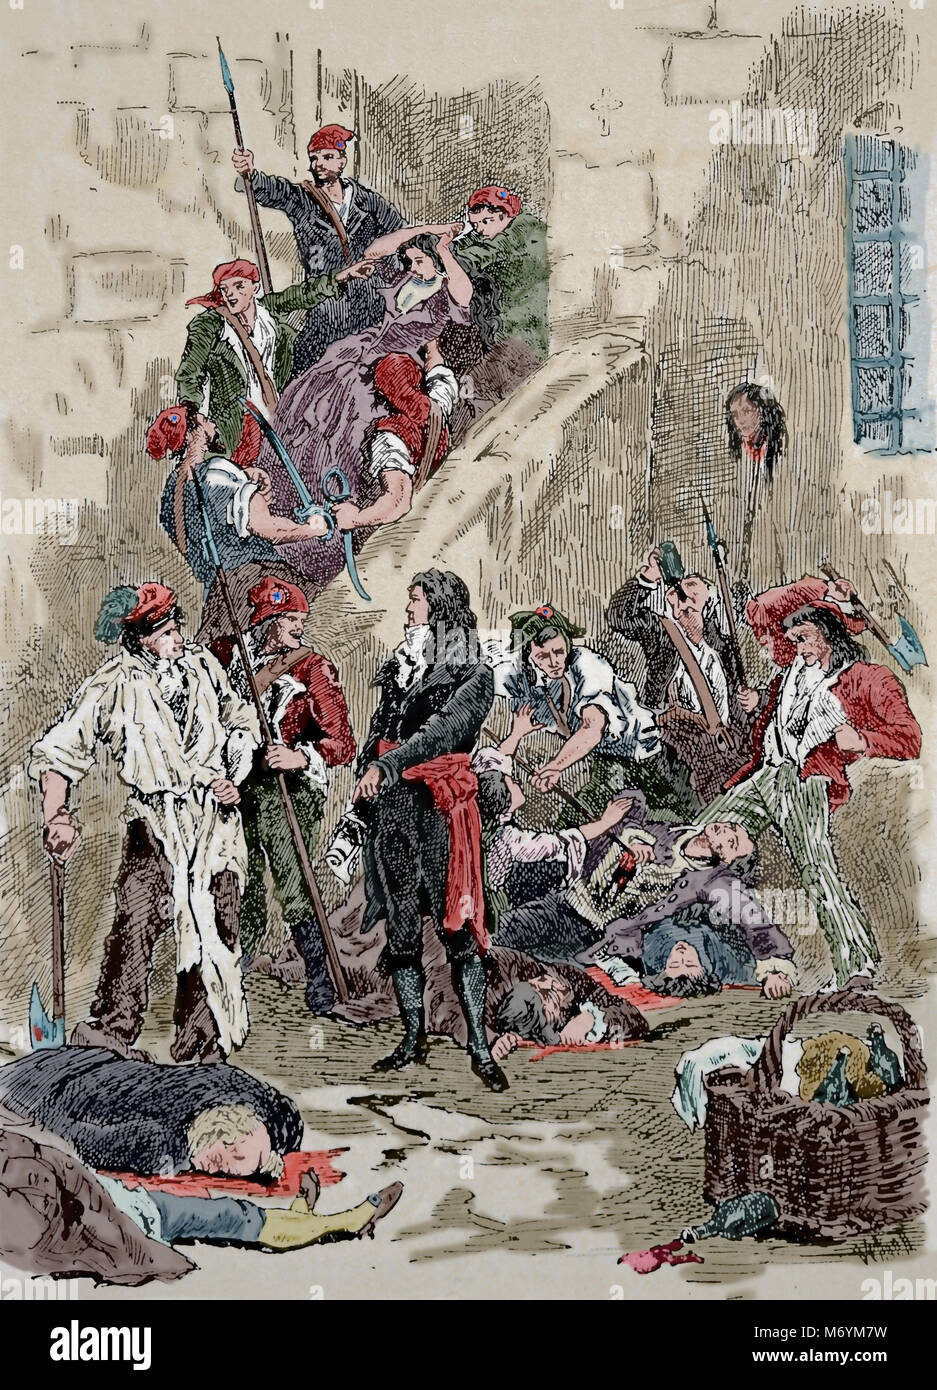 Révolution française. Les massacres de septembre, 2-7 sept. 1792. La population carcérale a été exécuté. Gravure, 19ème siècle. Banque D'Images